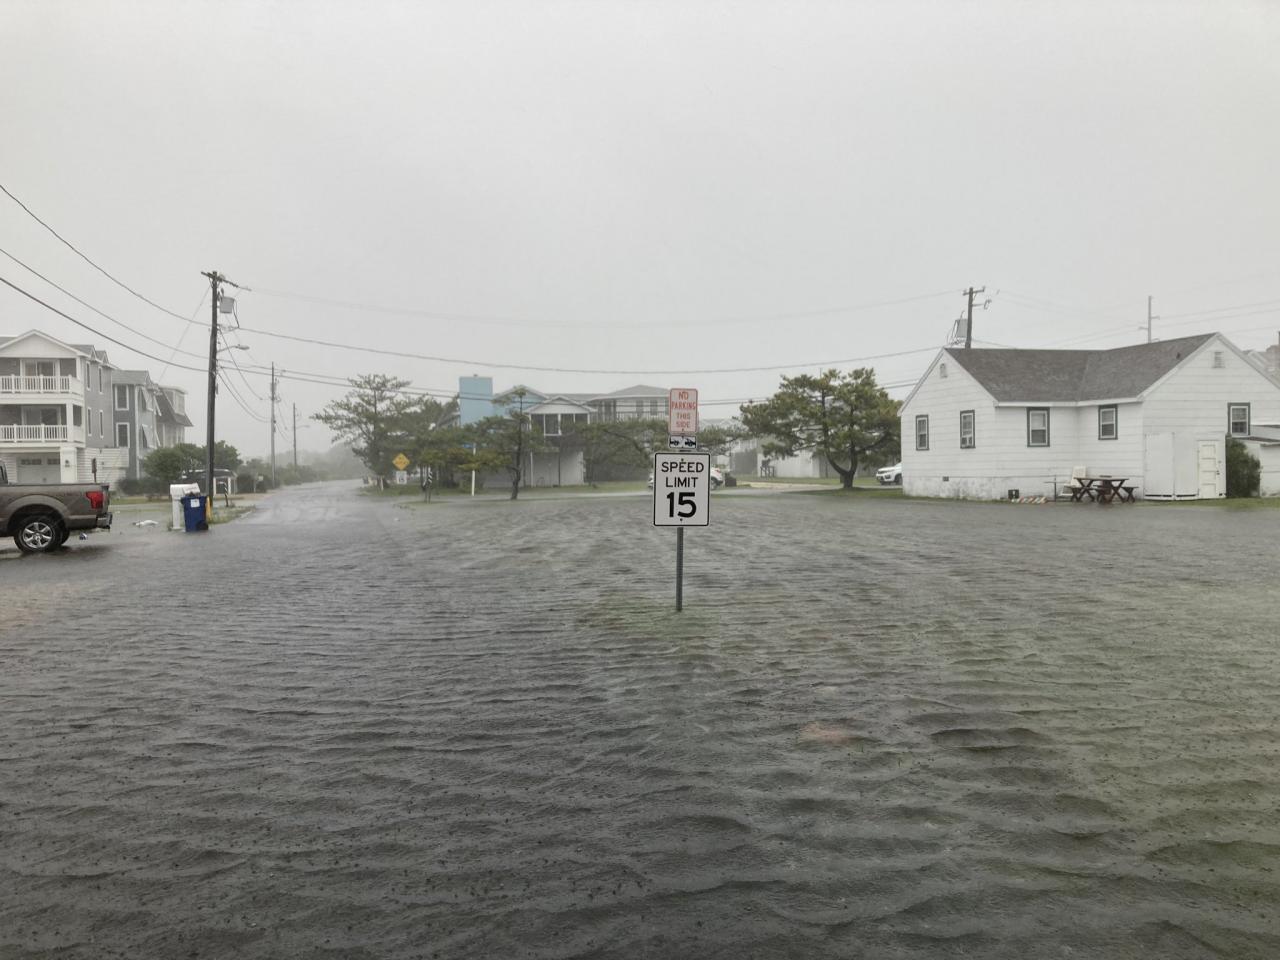 Allagamenti a Fenwick Island (Delaware) per la tempesta Fay. Fonte: Logan Jiles via Twitter